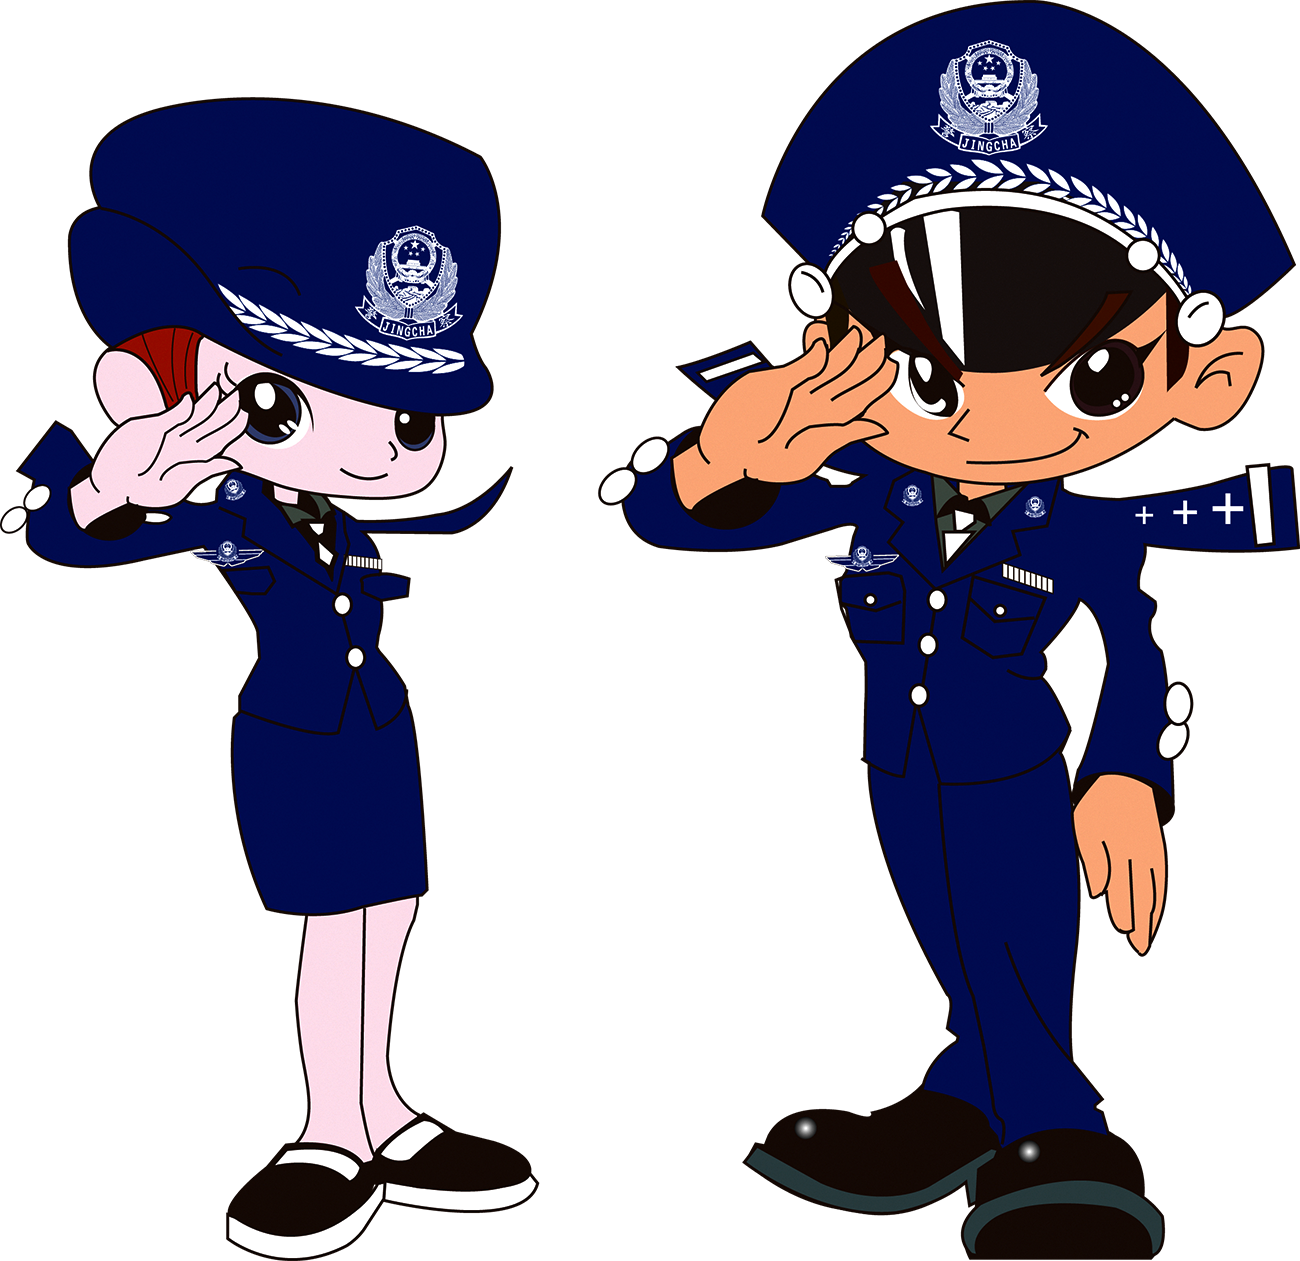 Municipal Police Public Security Law Enforcement - 警察 矢量 图 (1300x1261)